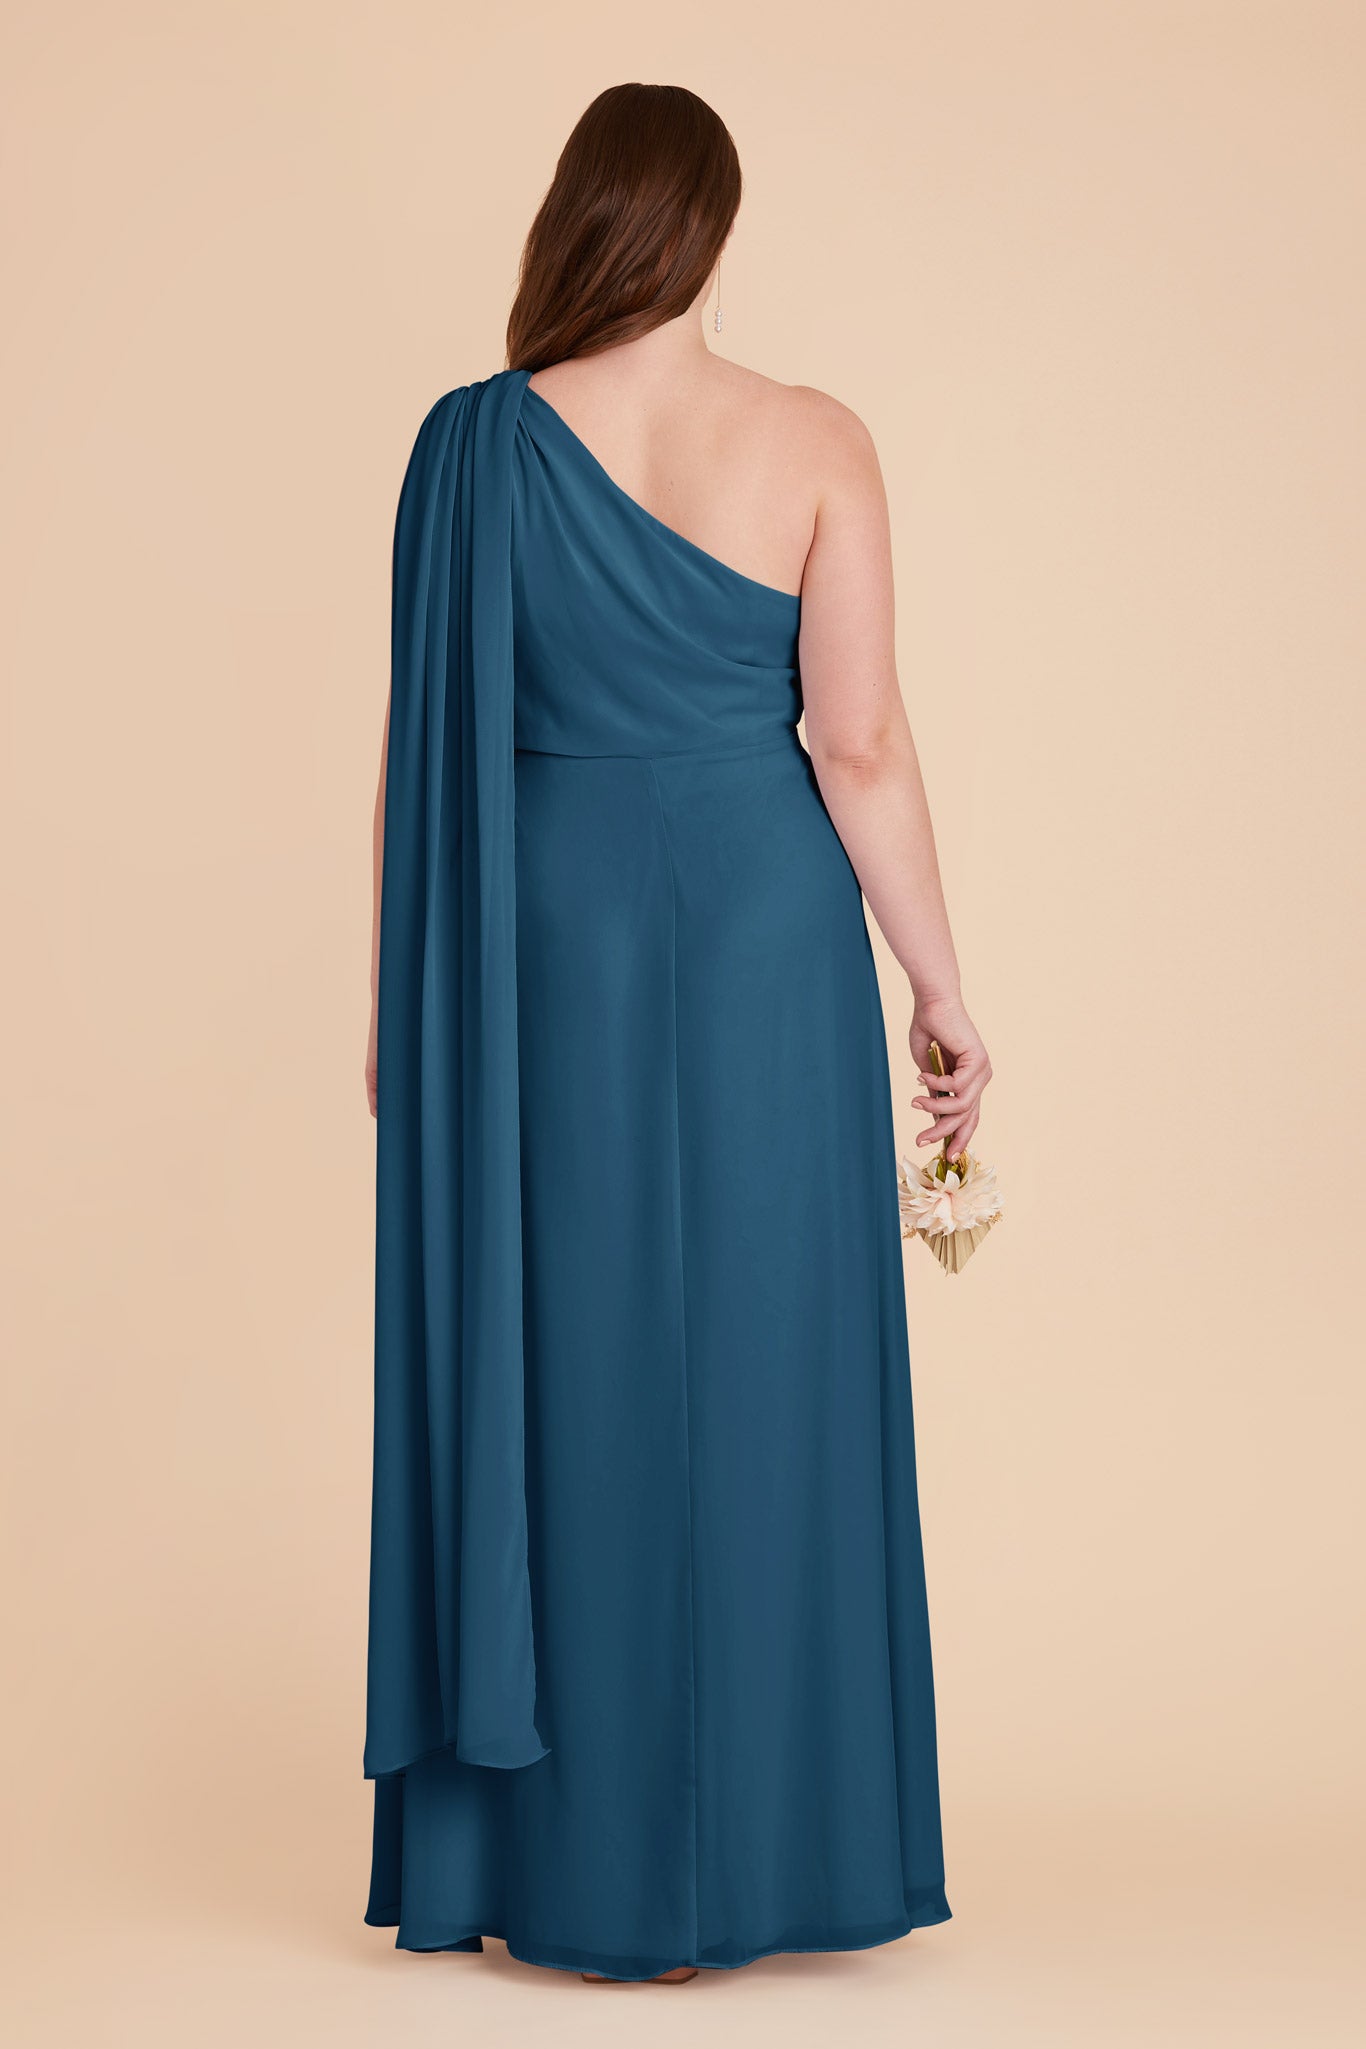 Ocean Blue Melissa Chiffon Dress by Birdy Grey